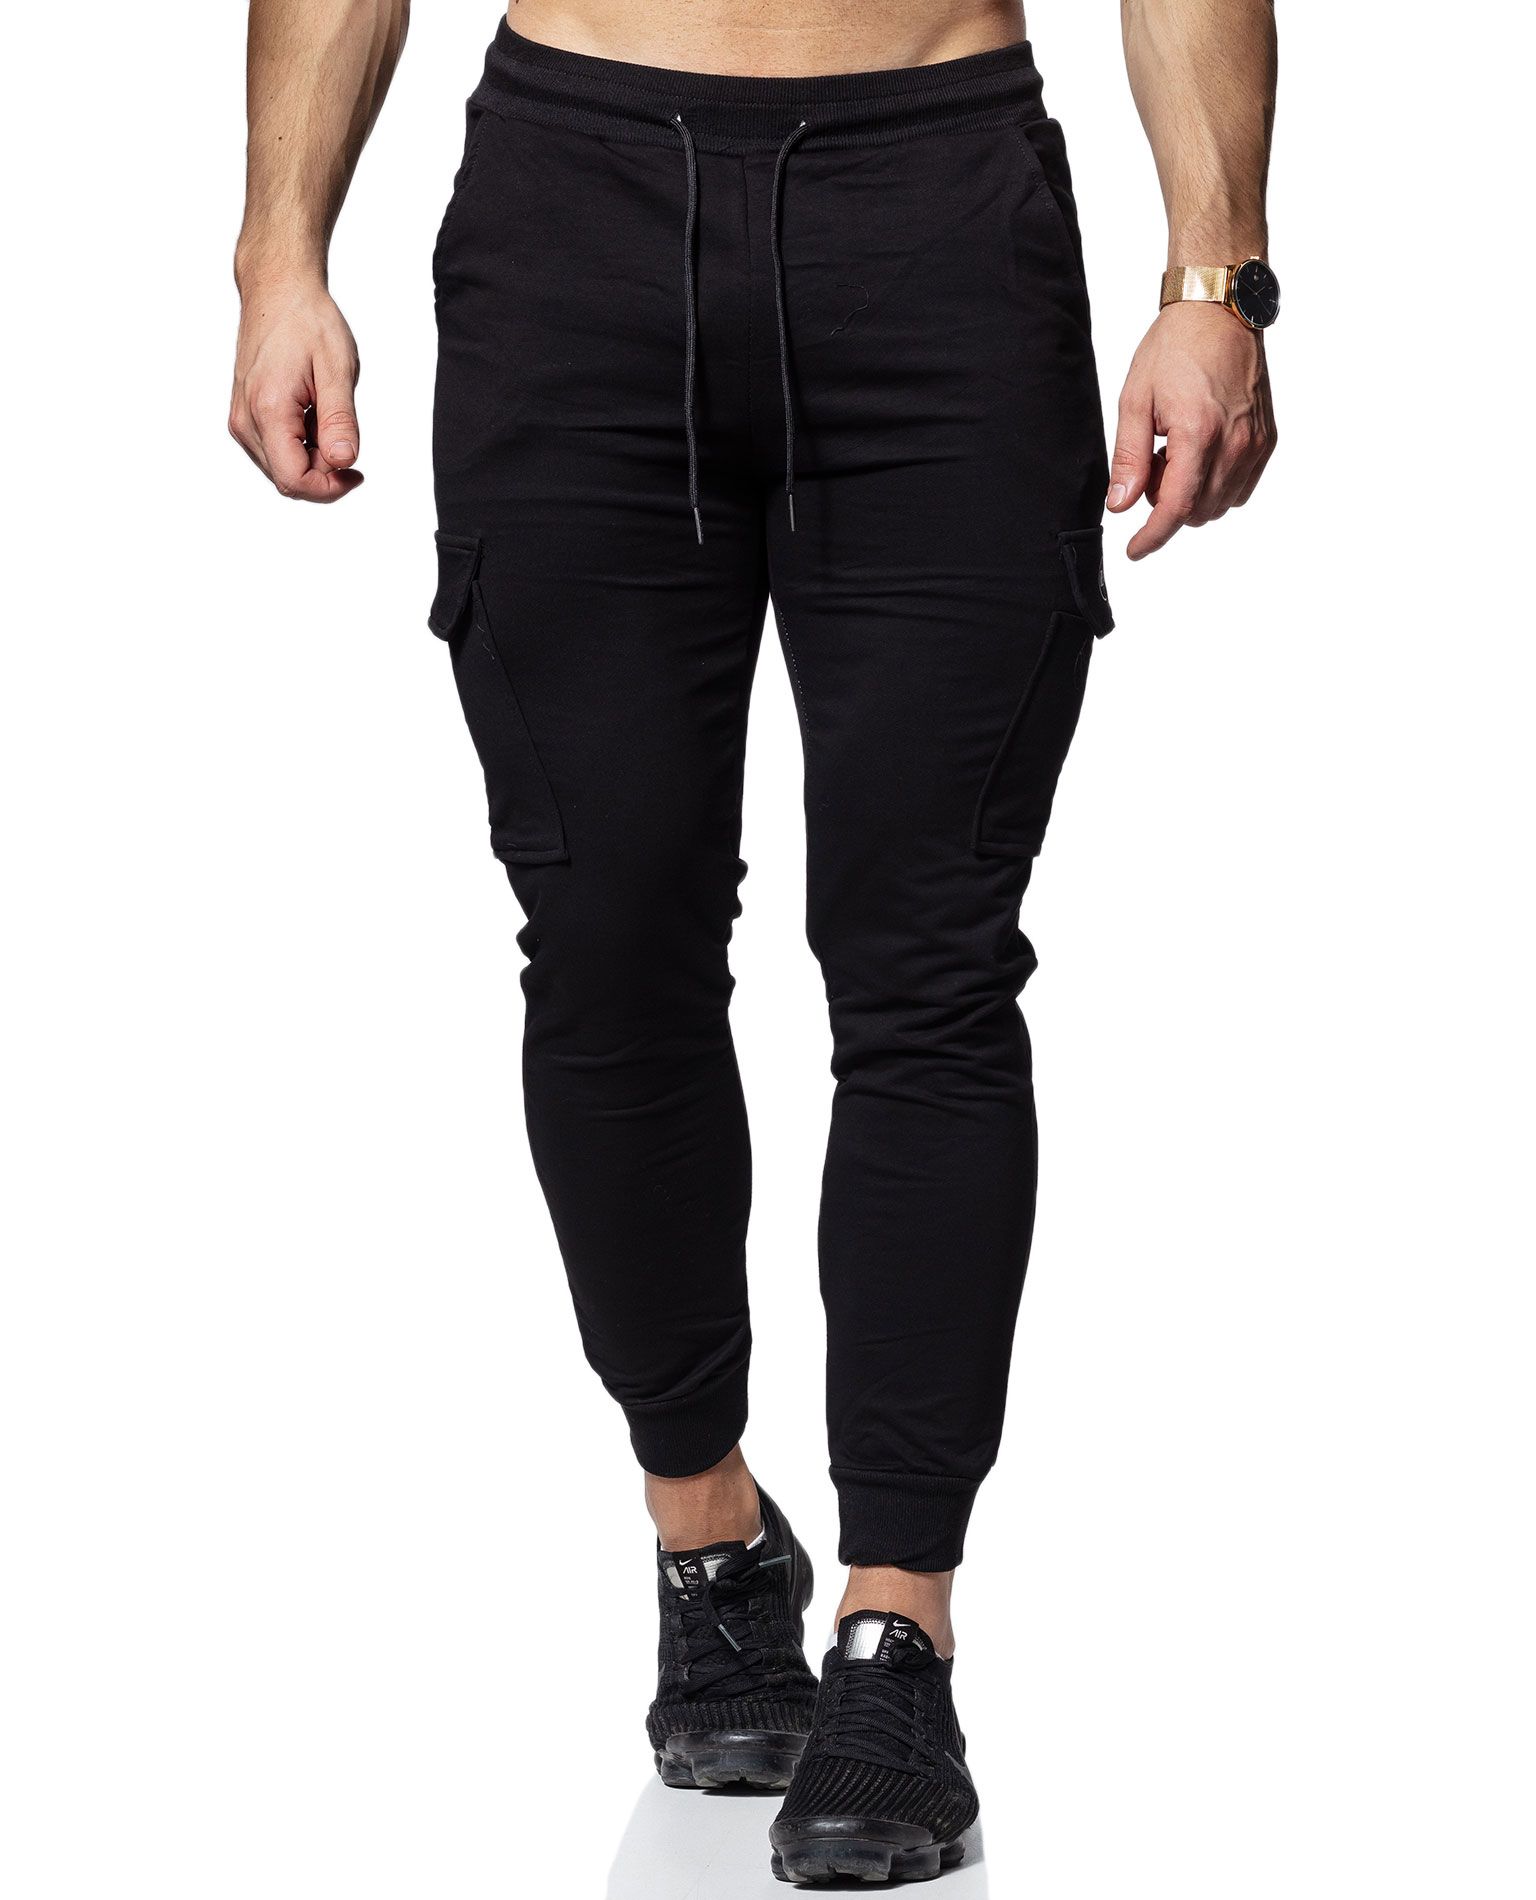 Mike Trousers Black REshape by Jerone - 3425 - Sportswear - Jerone